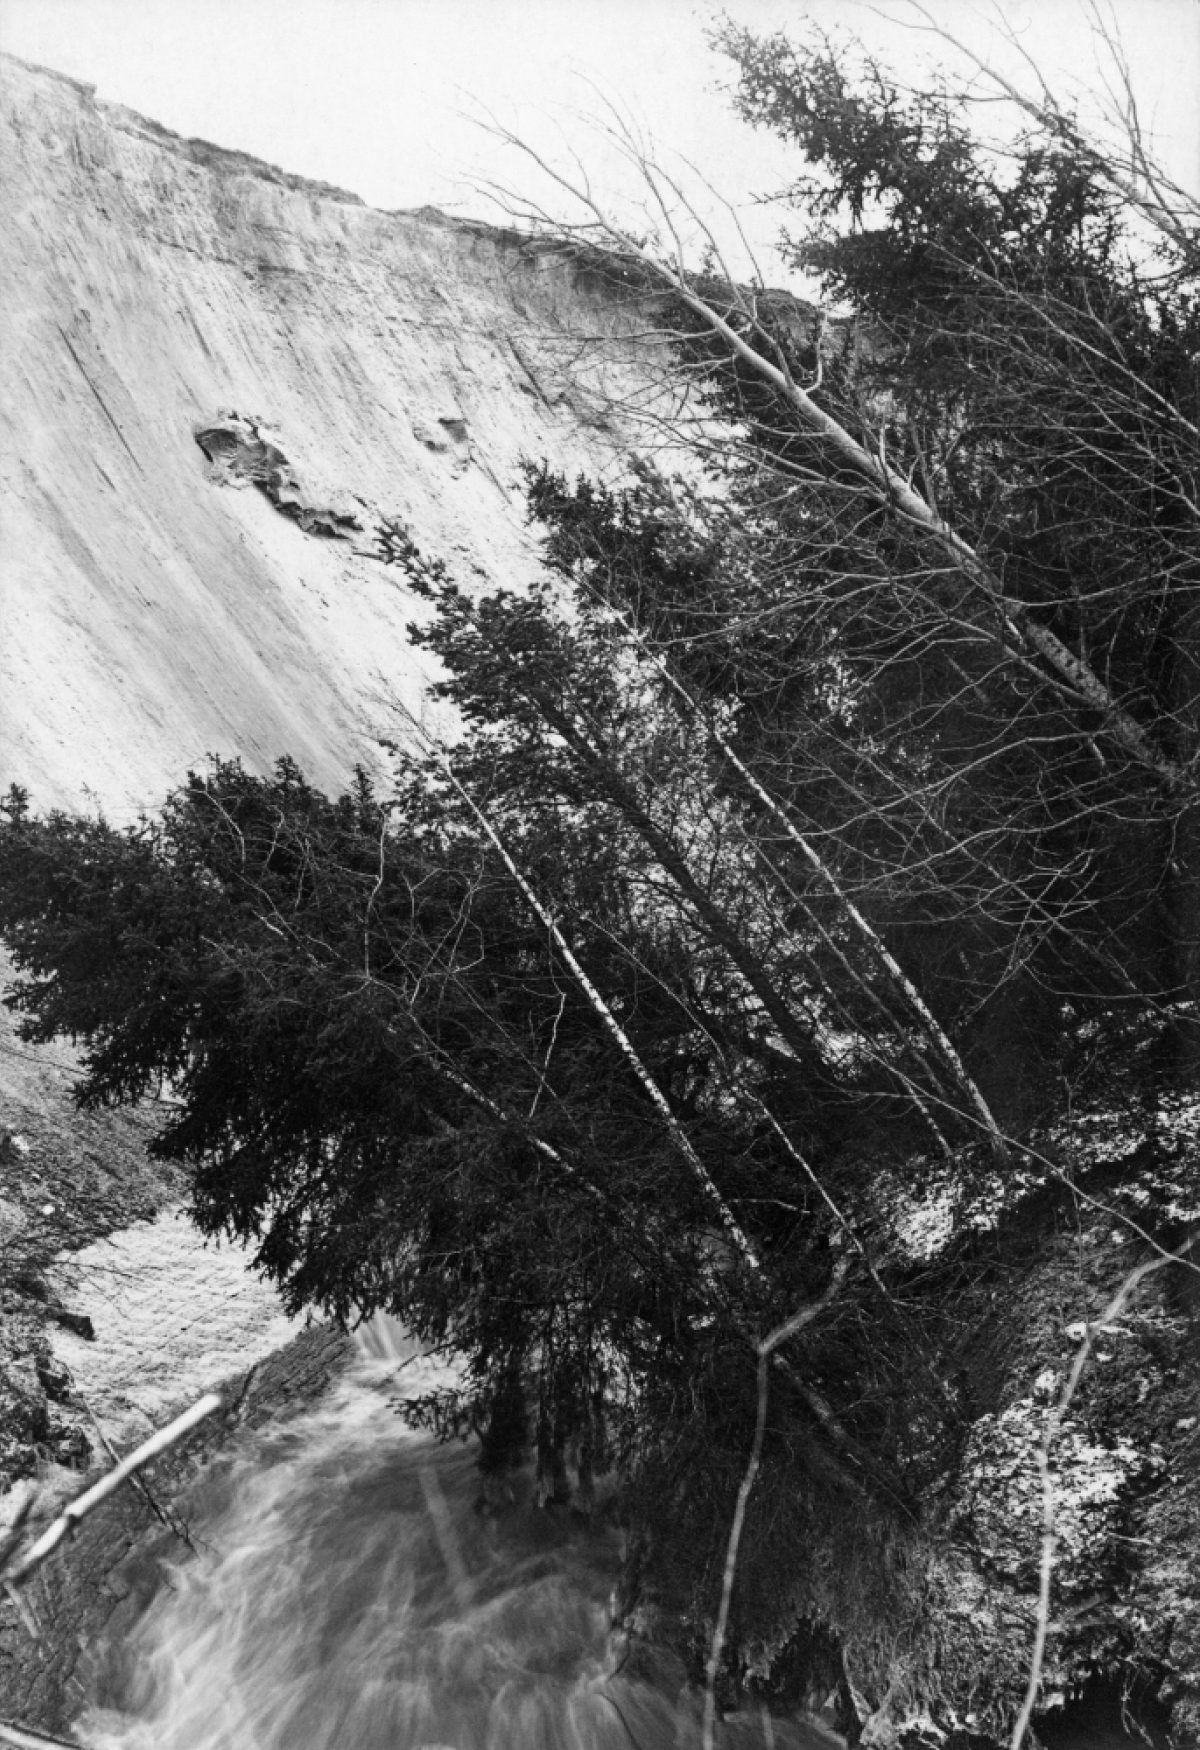 Jordskredet i Kurikka förevigades i Suomen Kuvalehti 1930. Foto: Aarne Jonasson / Otava / Journalistiska bildarkivet JOKA / Museiverket